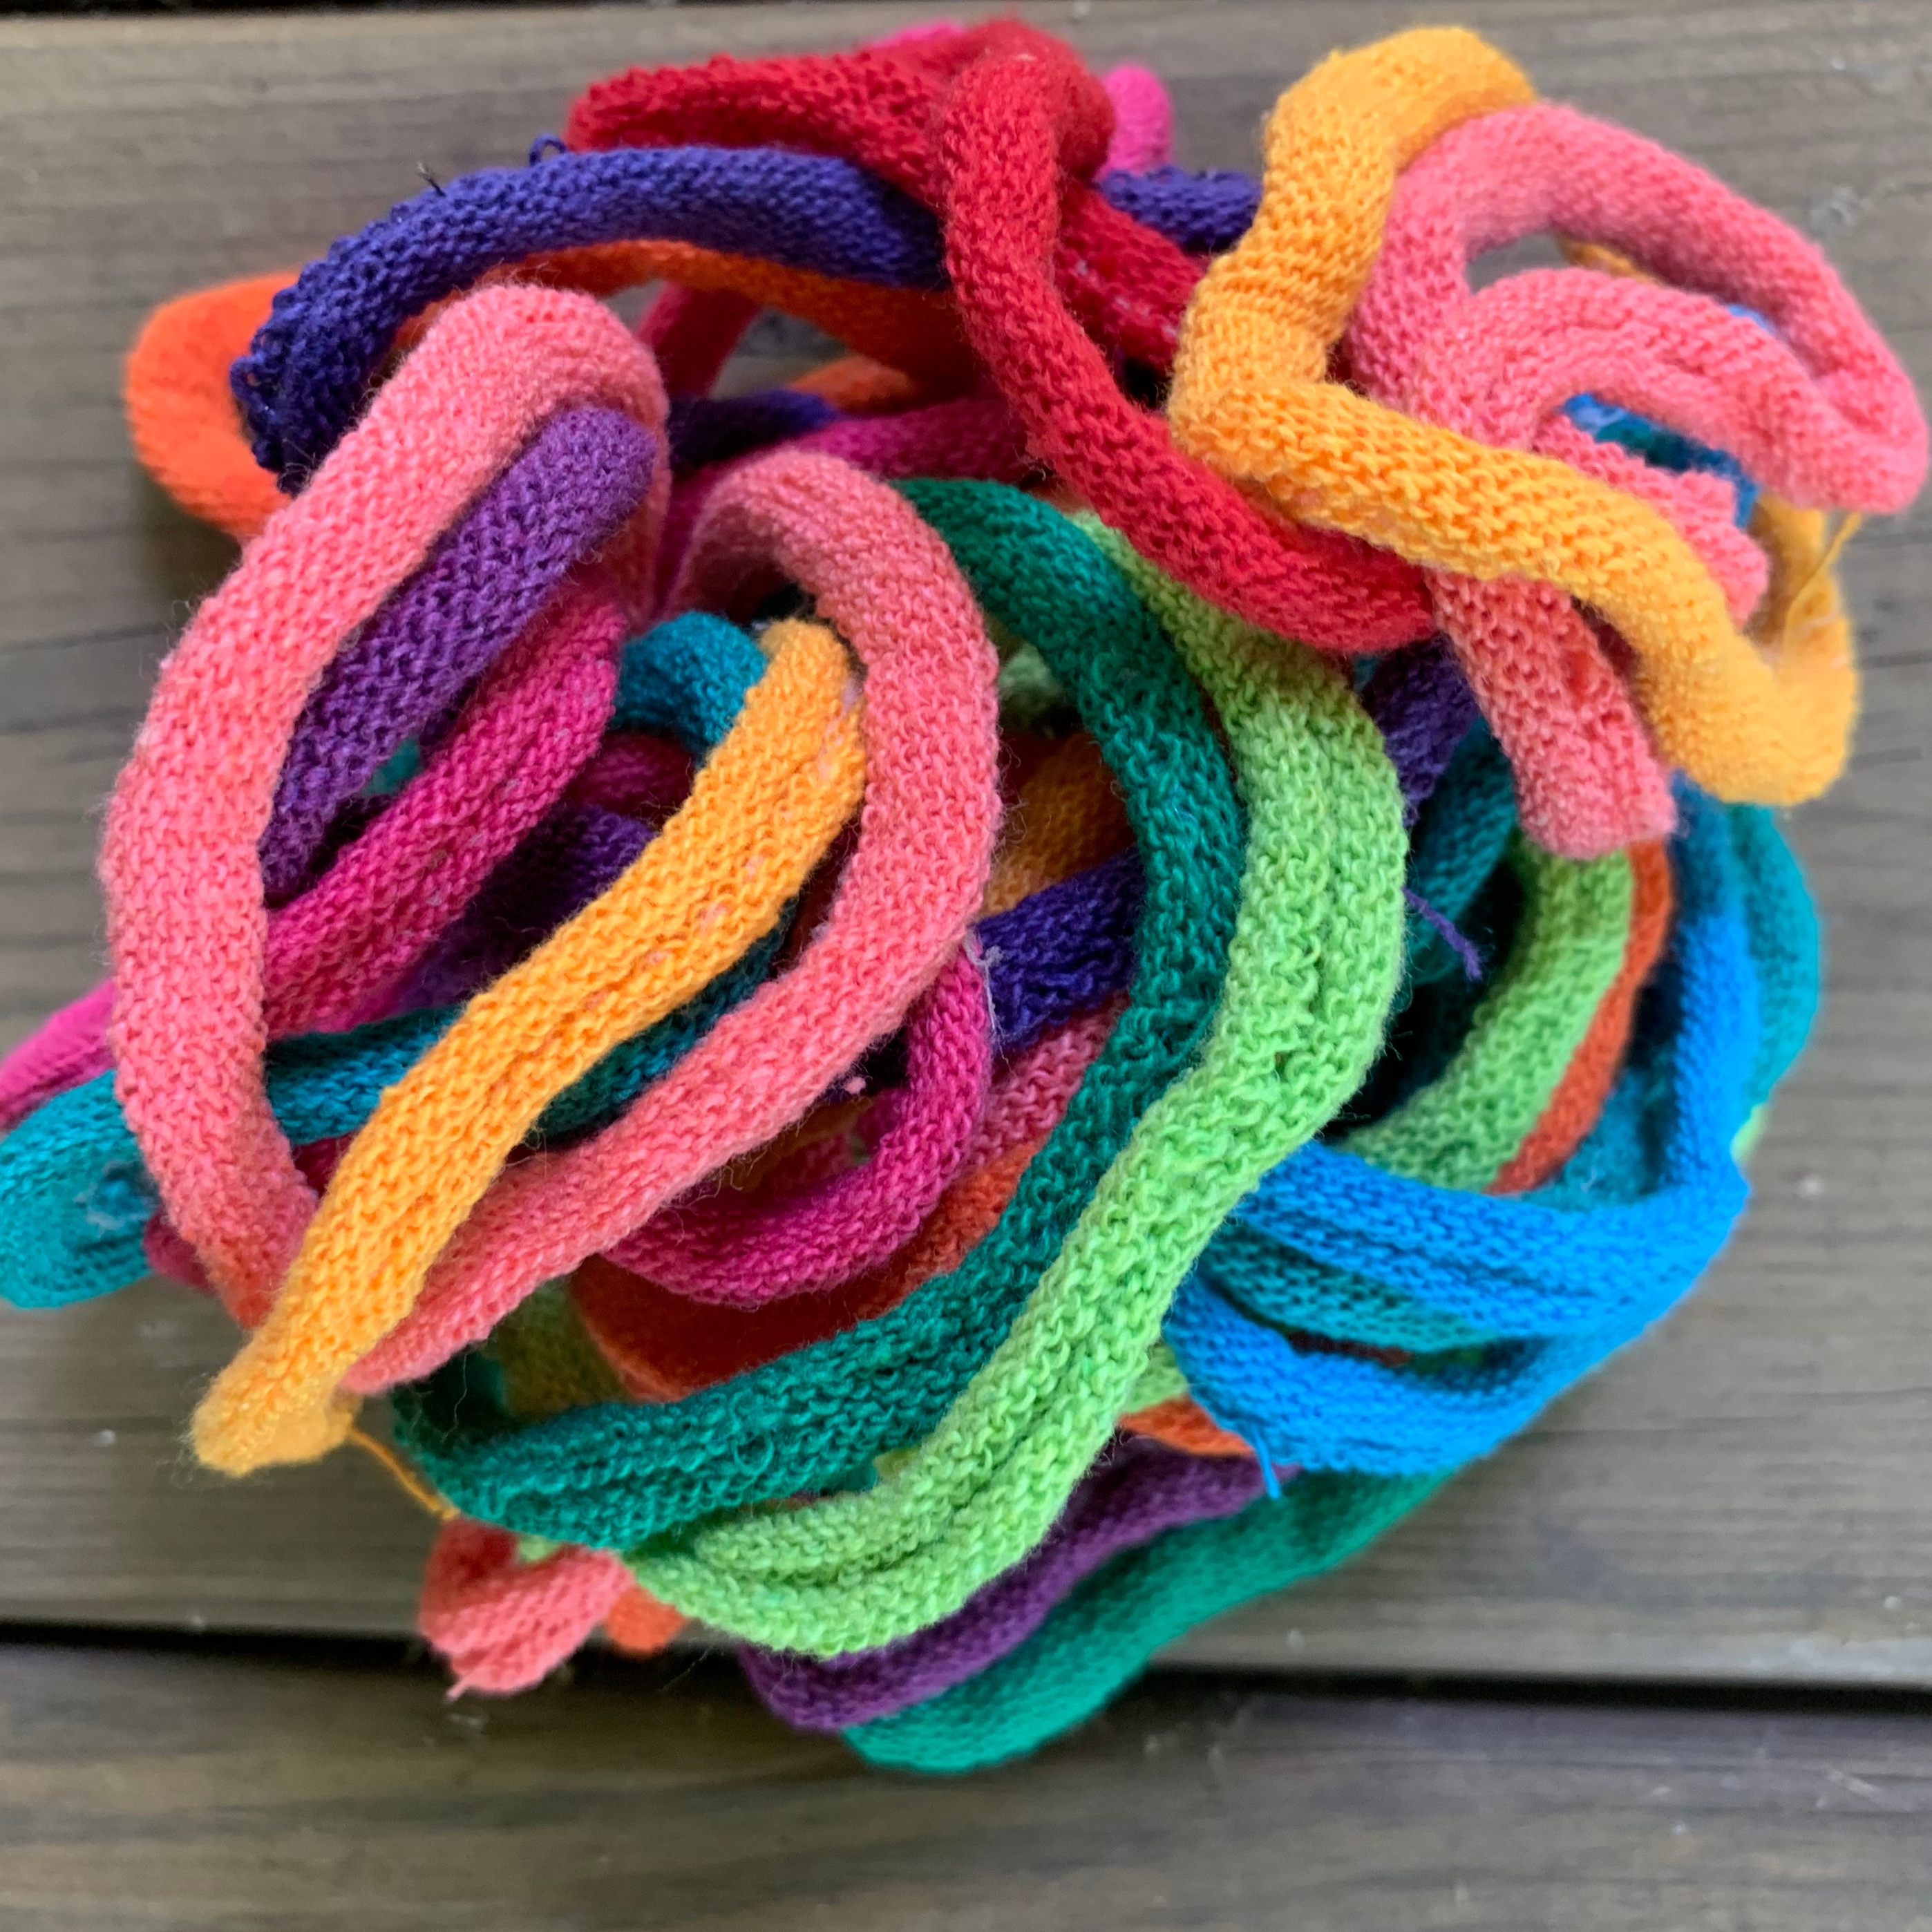 Rainbow Lotta Loops for Potholder Loom